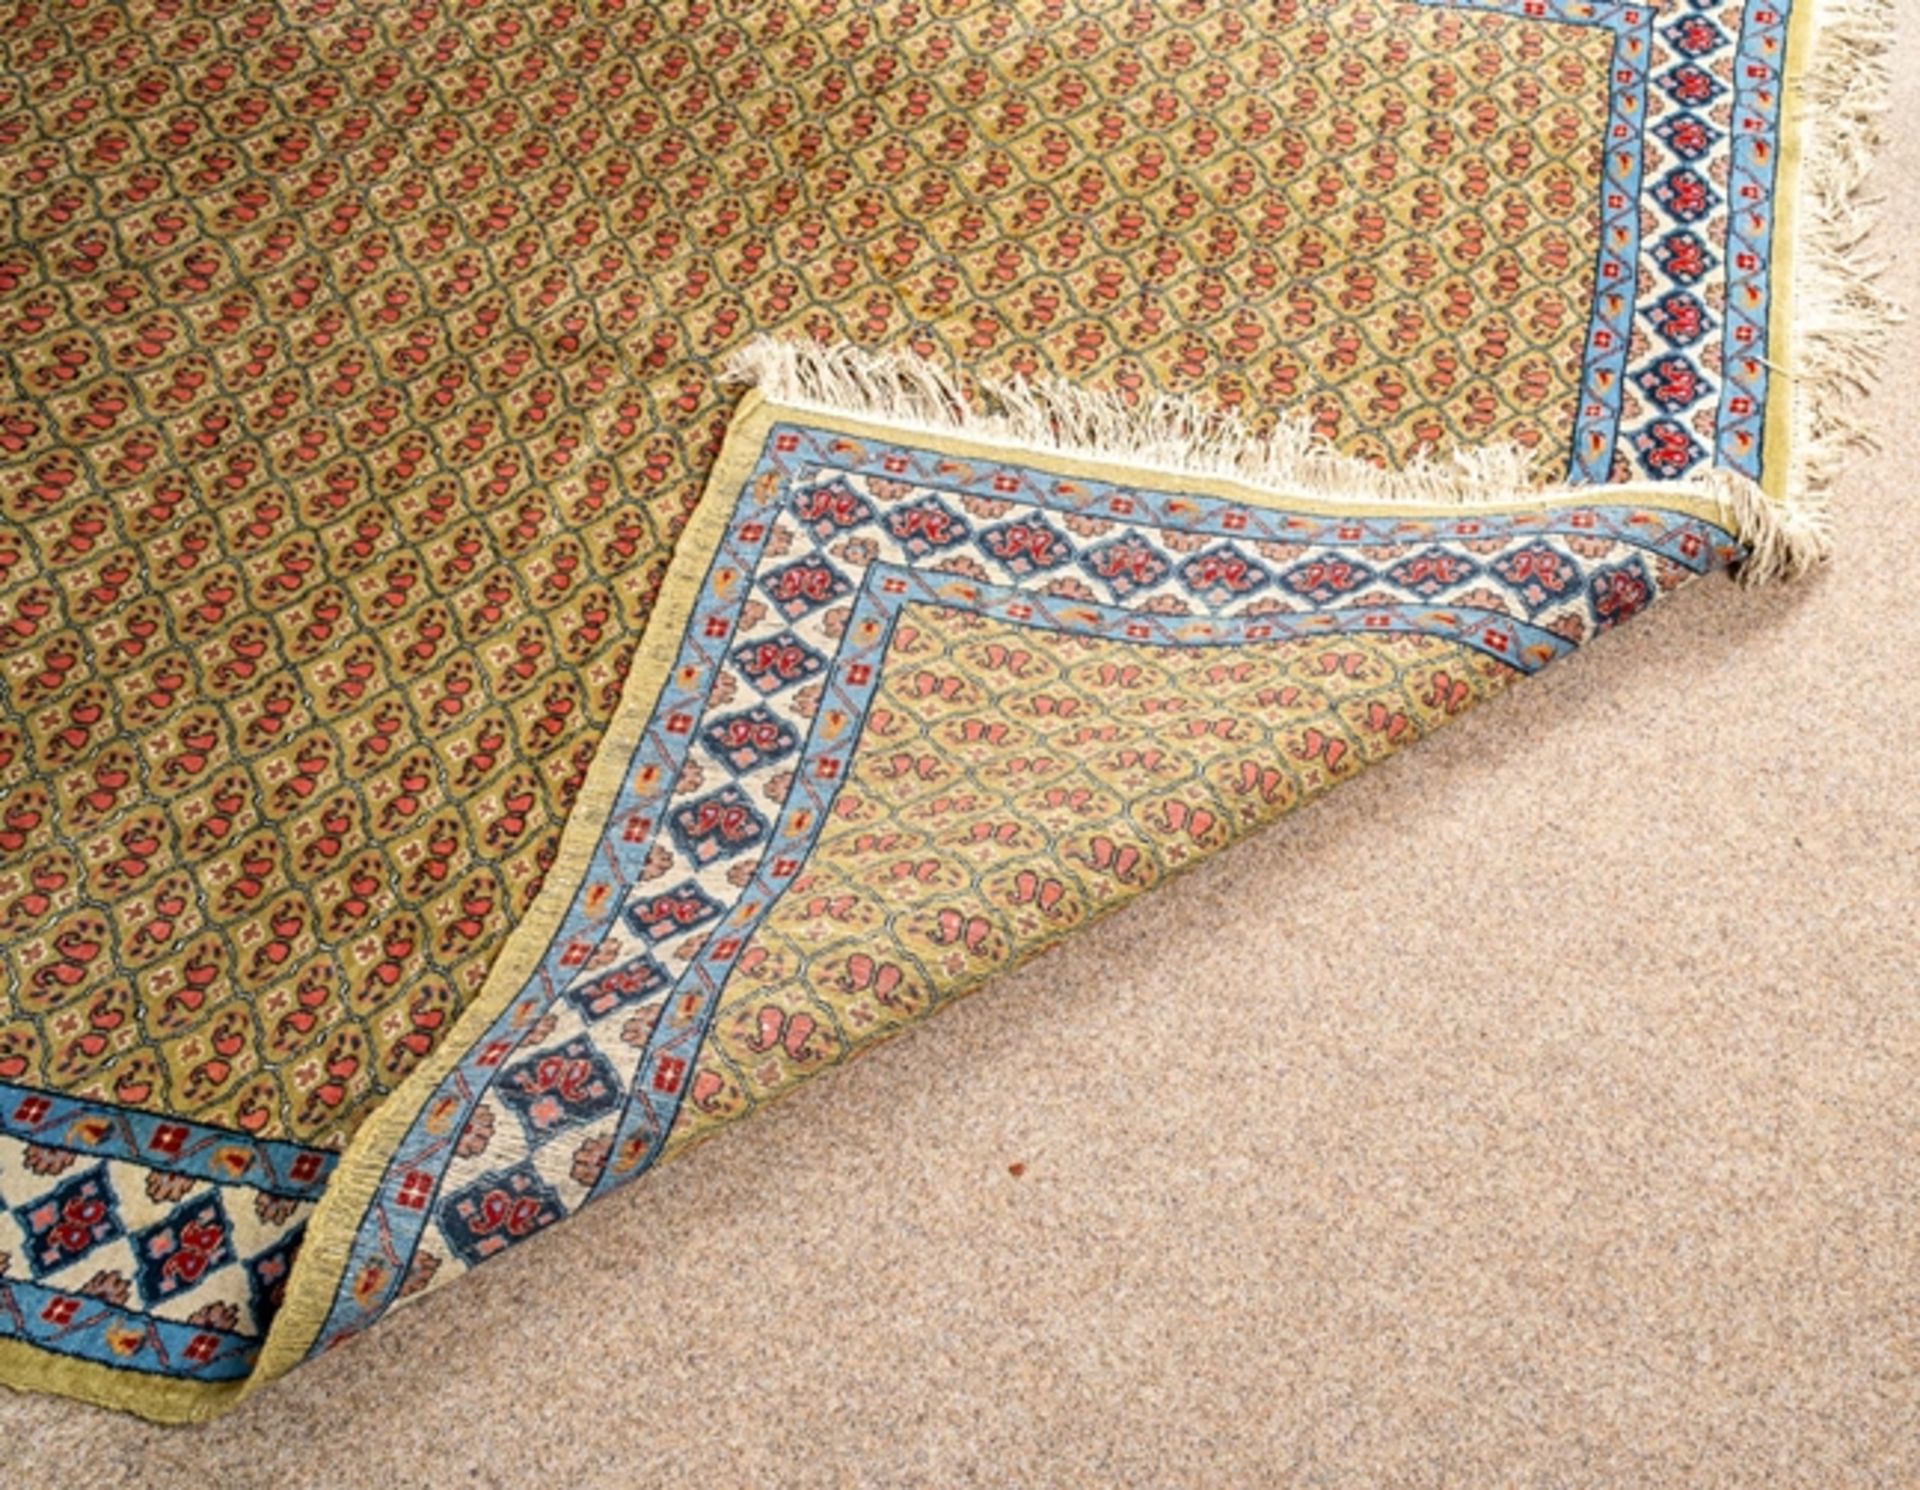 Machilipatnam "Teppich", antik, Südostasien, Ende 19. Jhd. Wolle auf Baumwolle. - Image 5 of 5